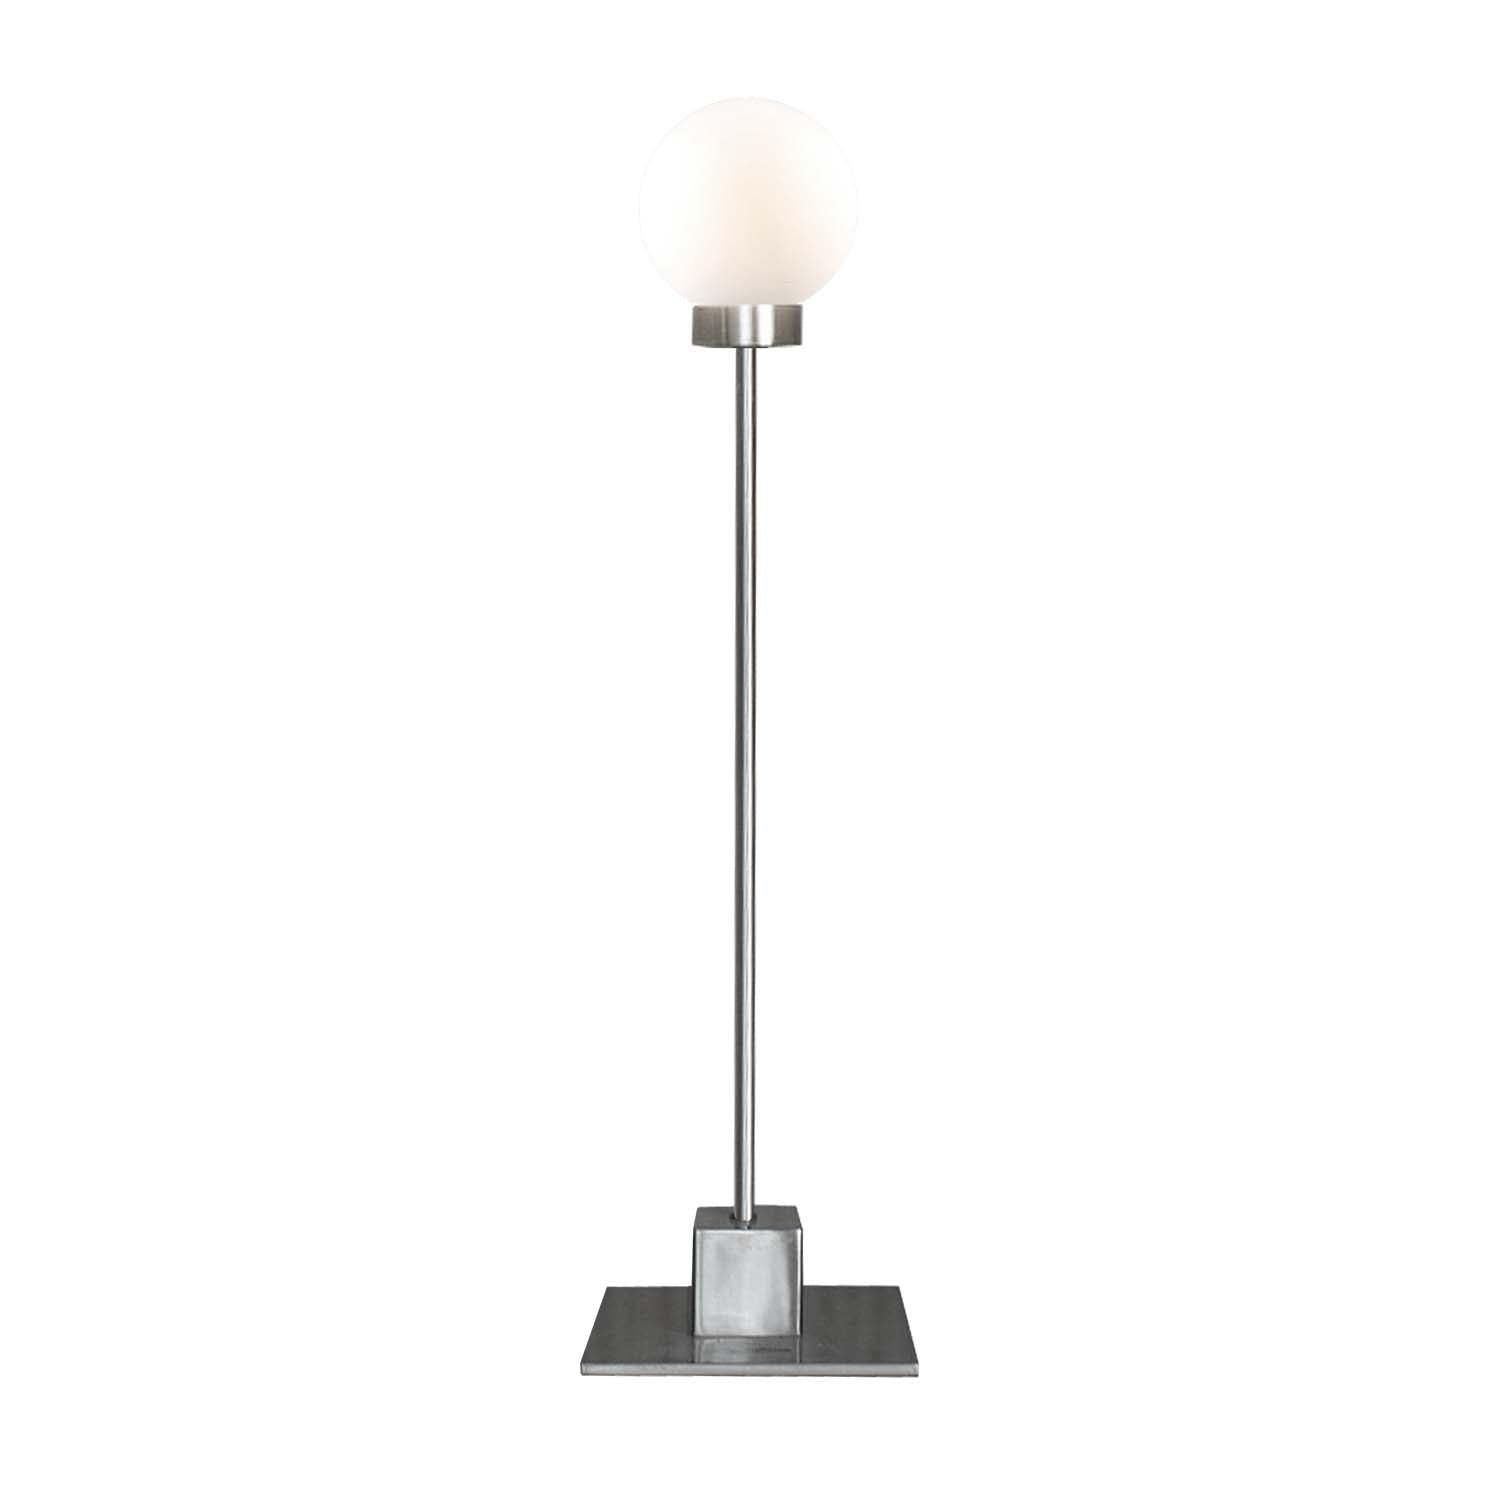 SNOWBALL - Lampe de chevet tige minimaliste, création de designer